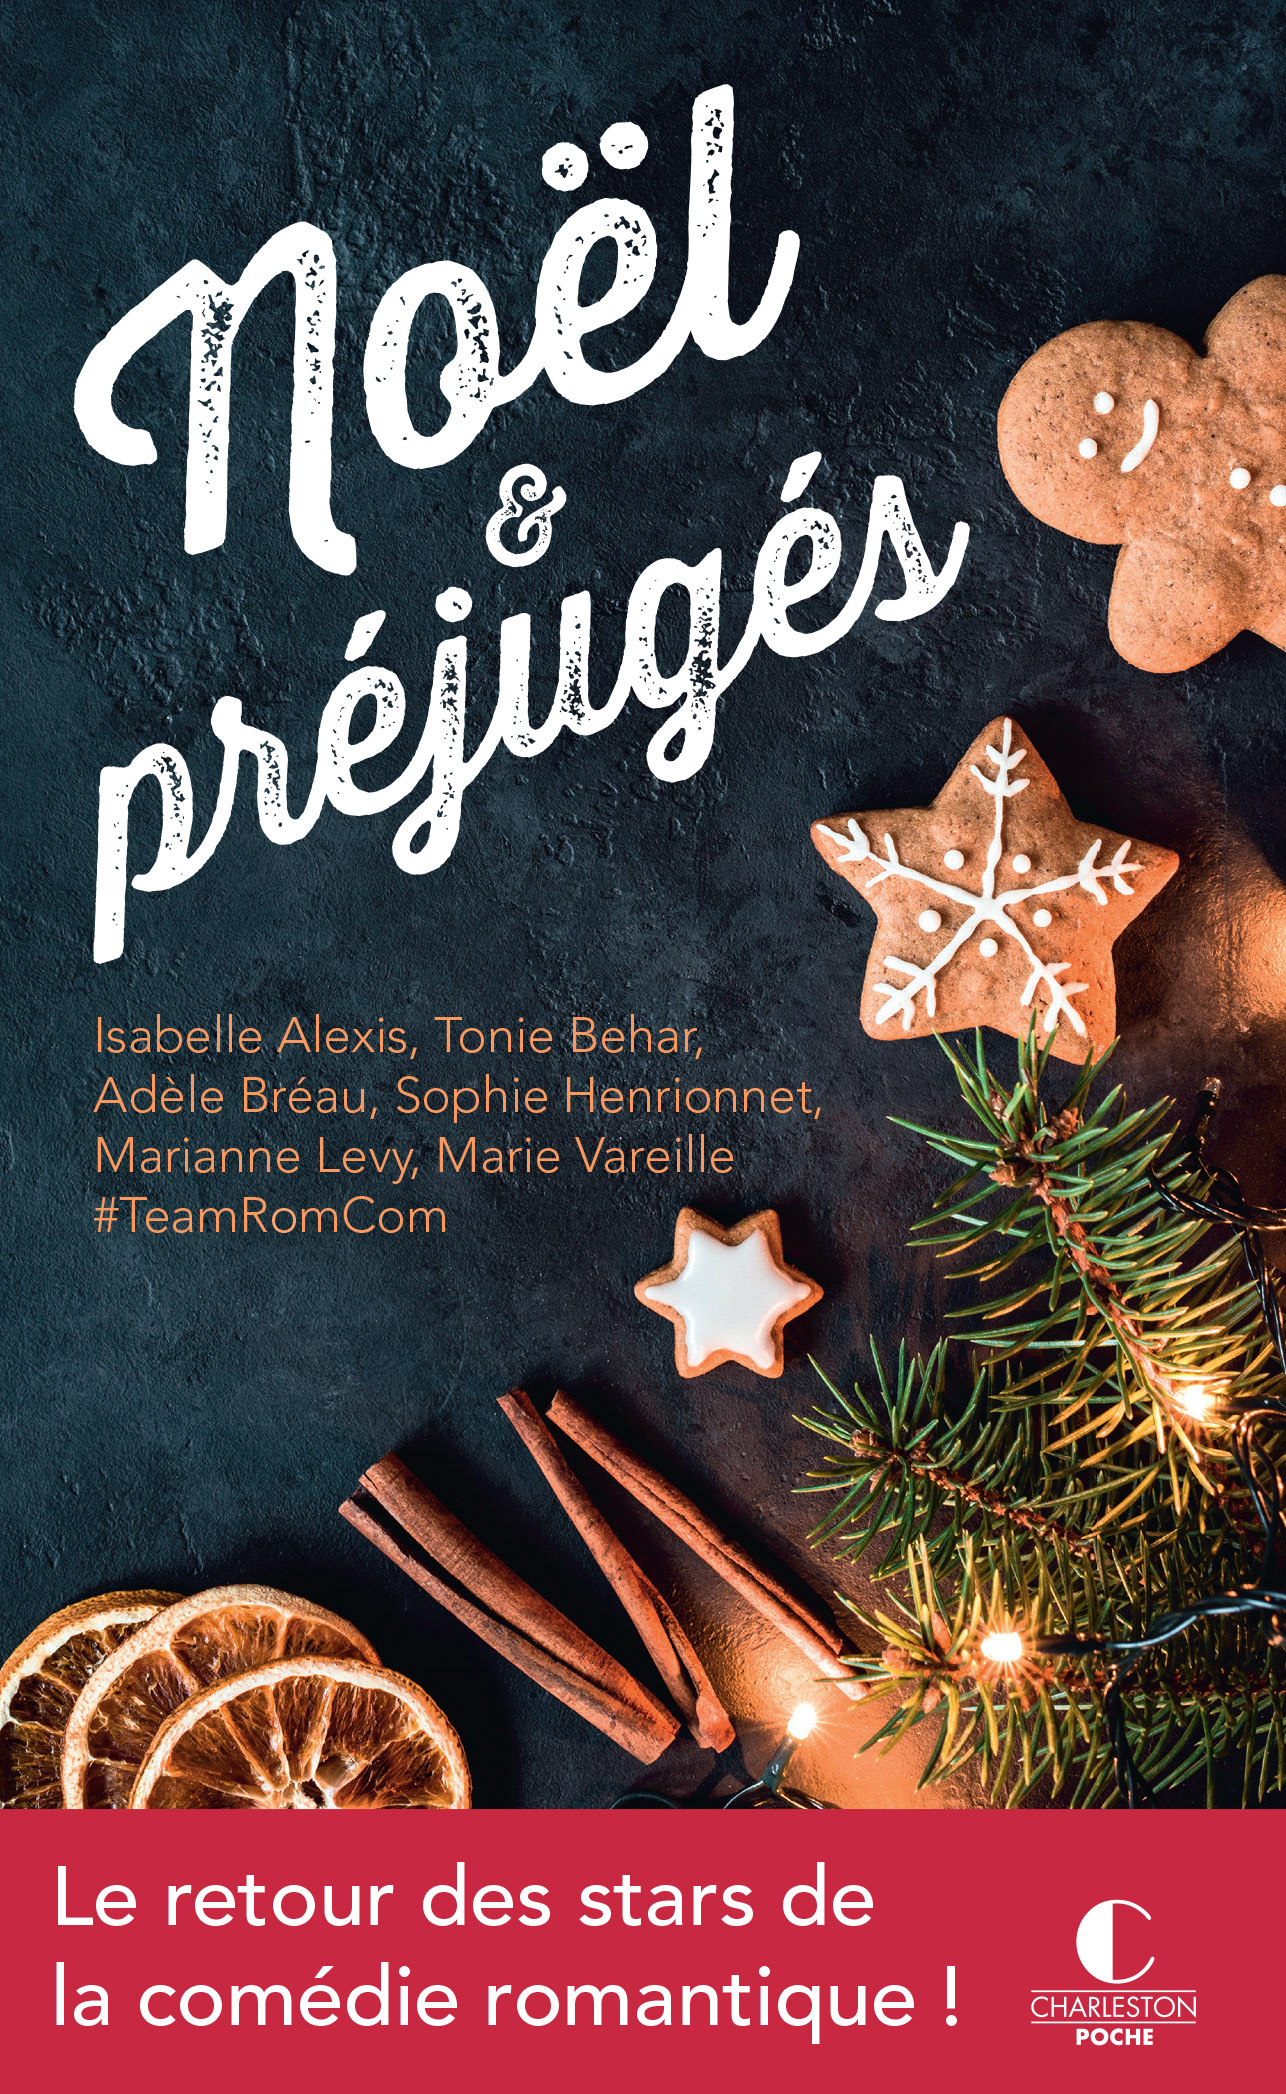 Noël et préjugés : histoires drôles et romantiques pour un Noël magique